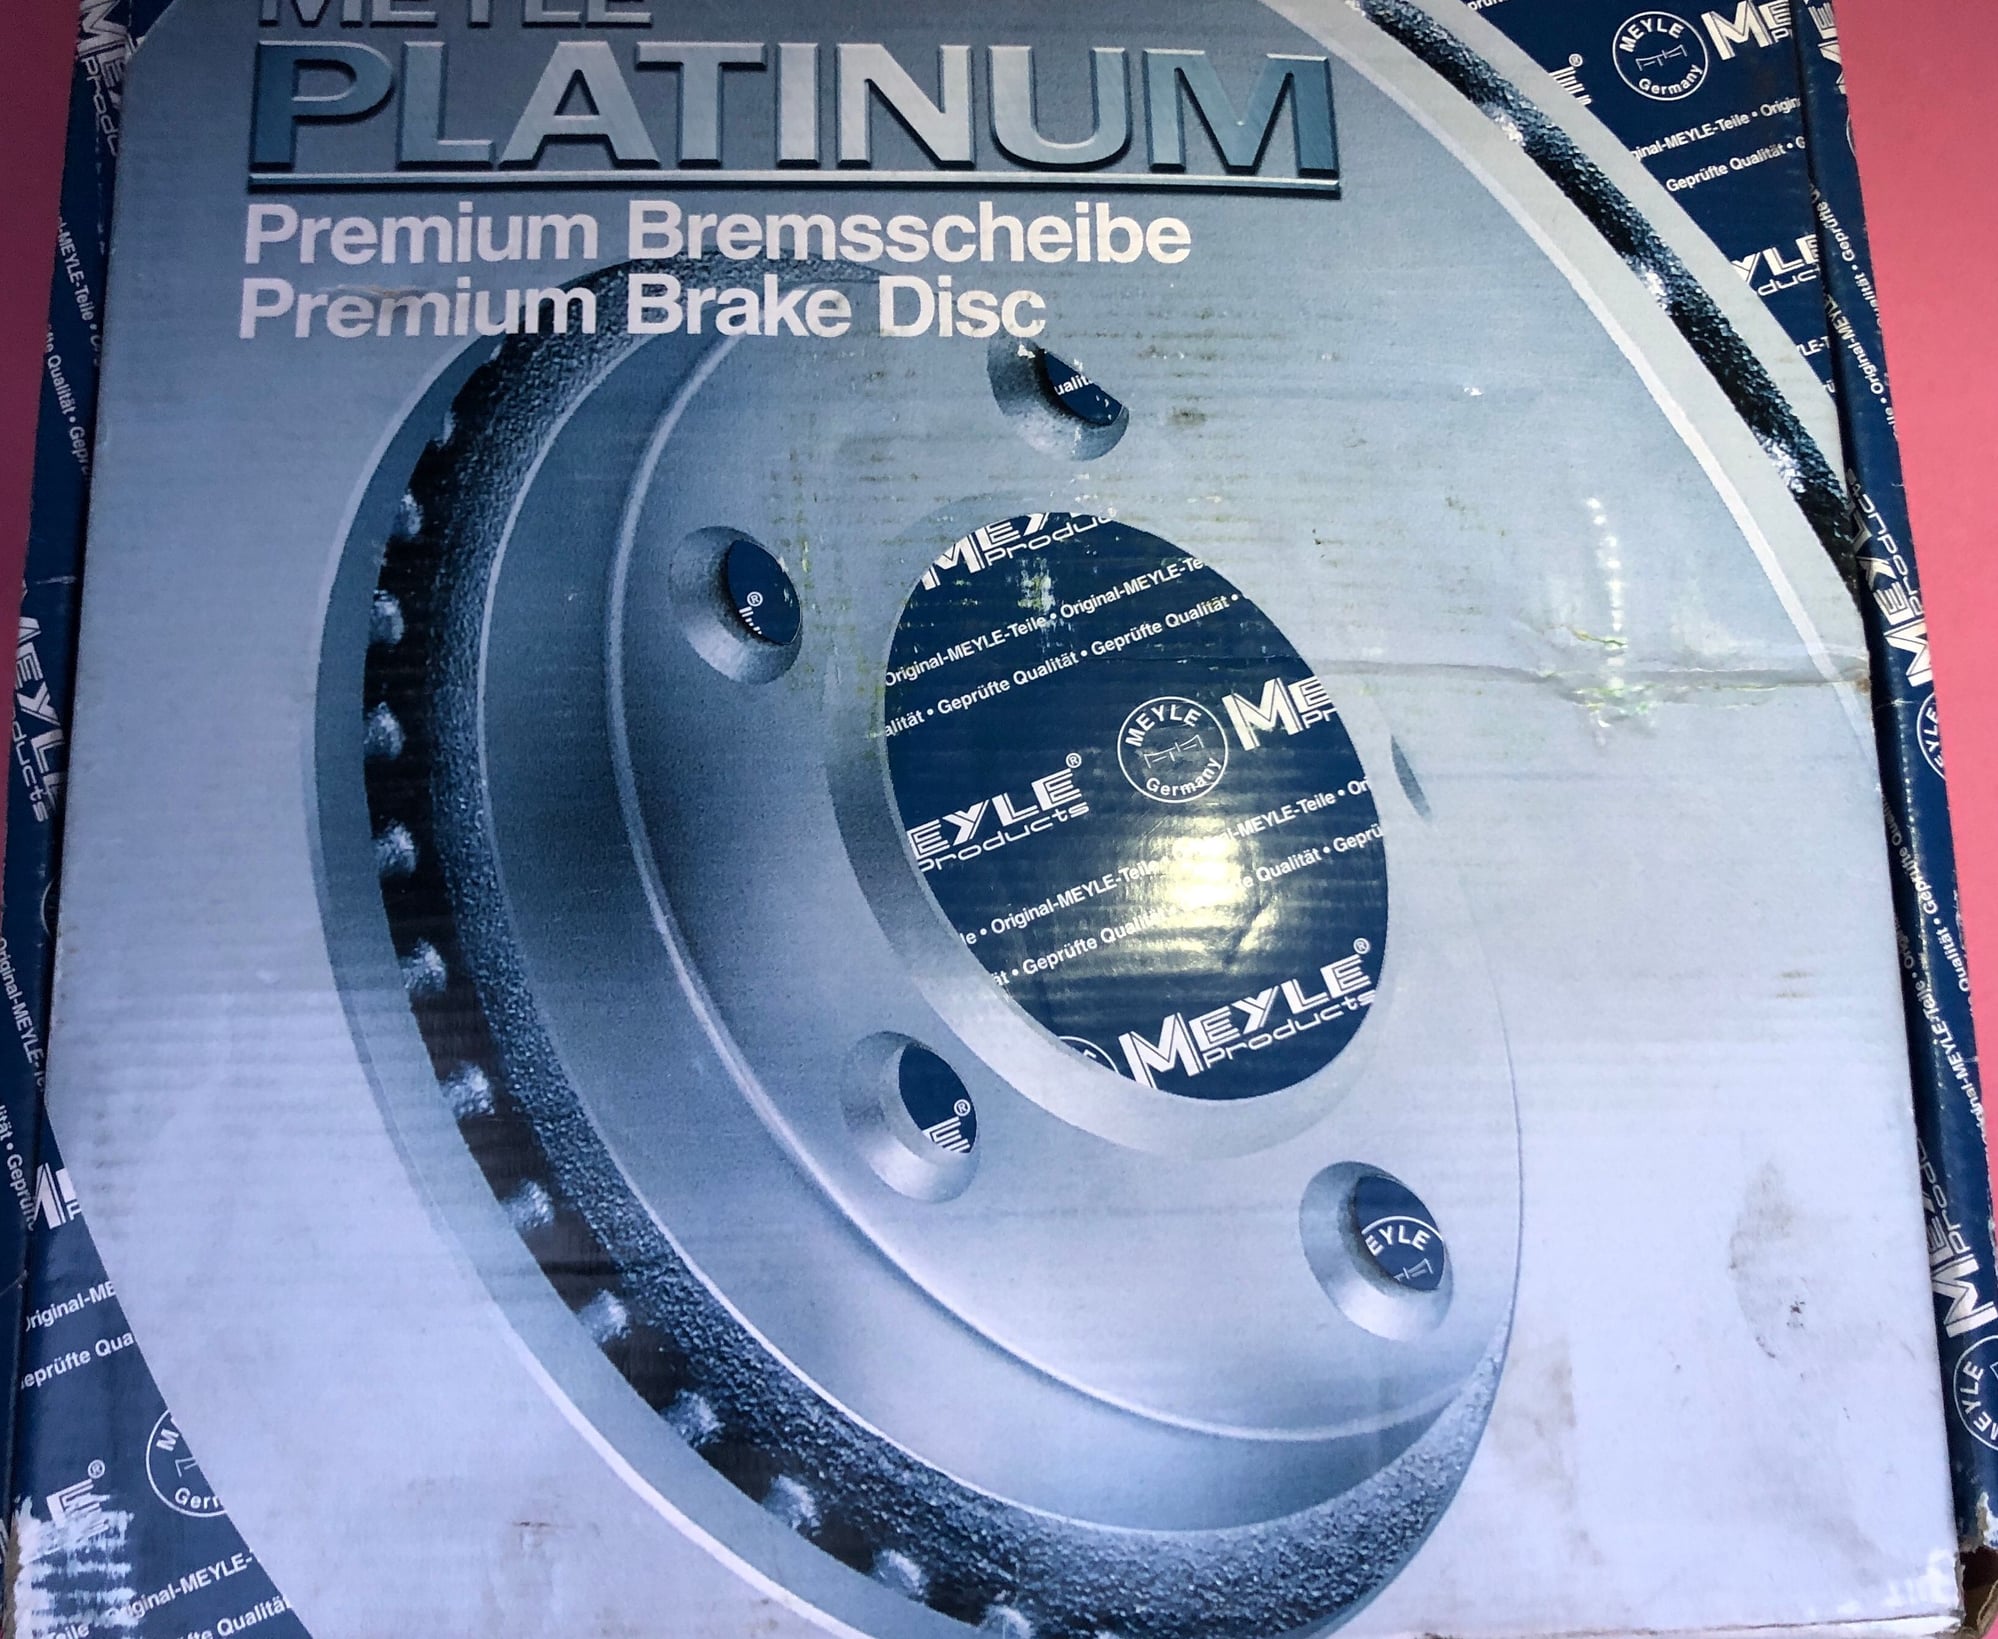 Brakes - FS: 2007 W163 / W164 Meyles Platinum Brake Discs + Textar Brake Pads - New - 2007 to 2018 Mercedes-Benz ML350 - Emeryville, CA 94608, United States